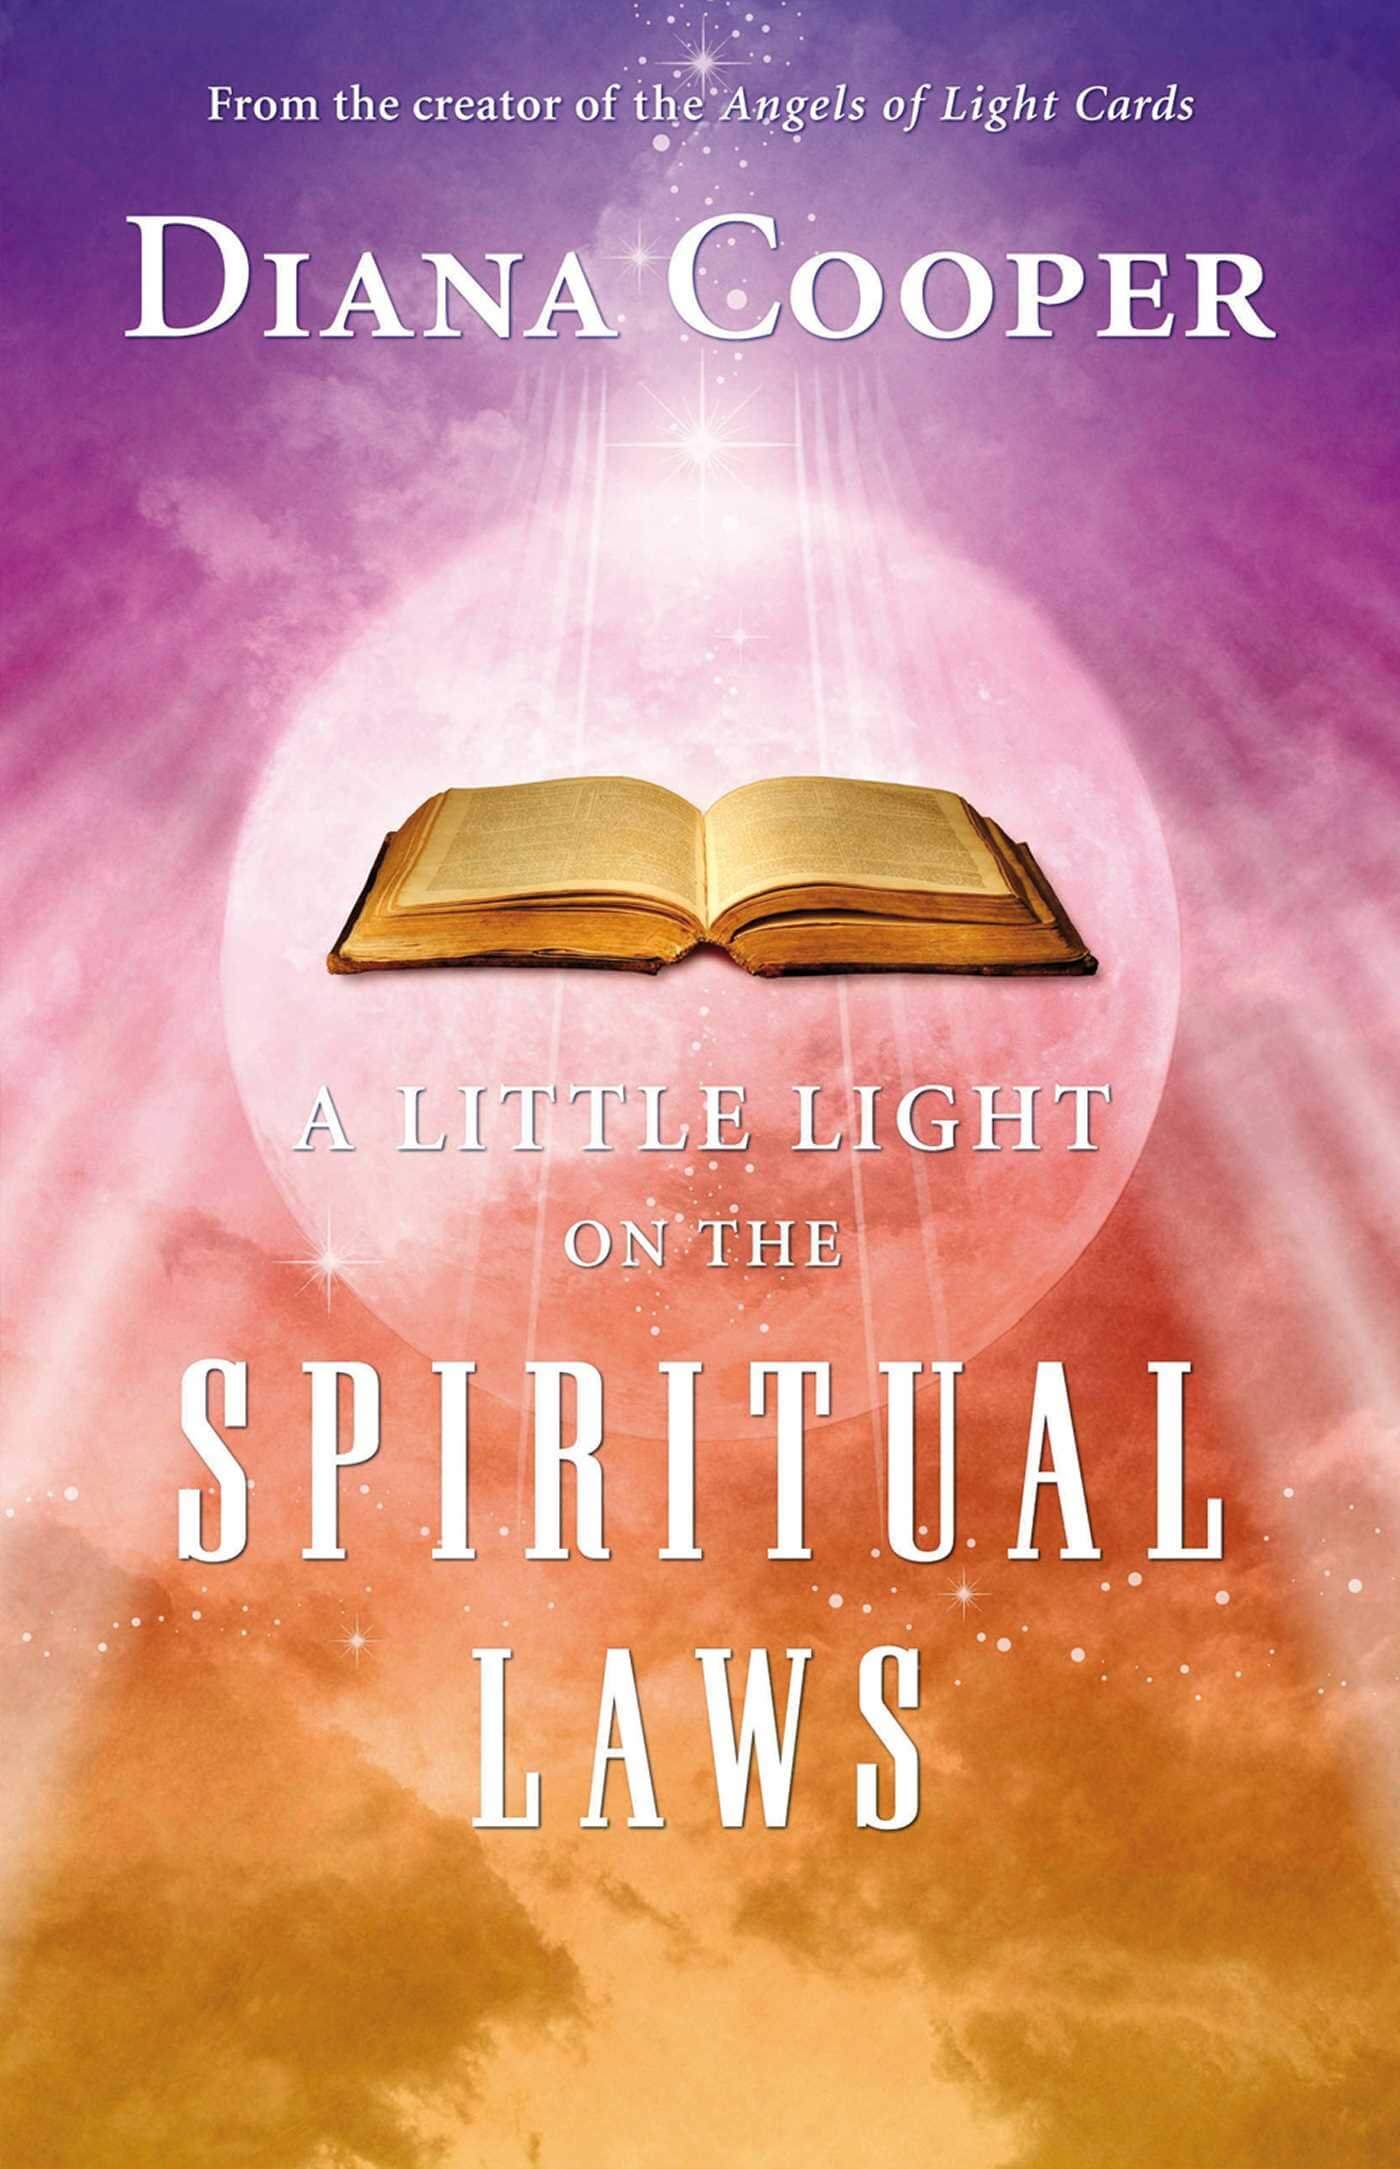 خلاصه کتاب ۳۵ قانون روحانی